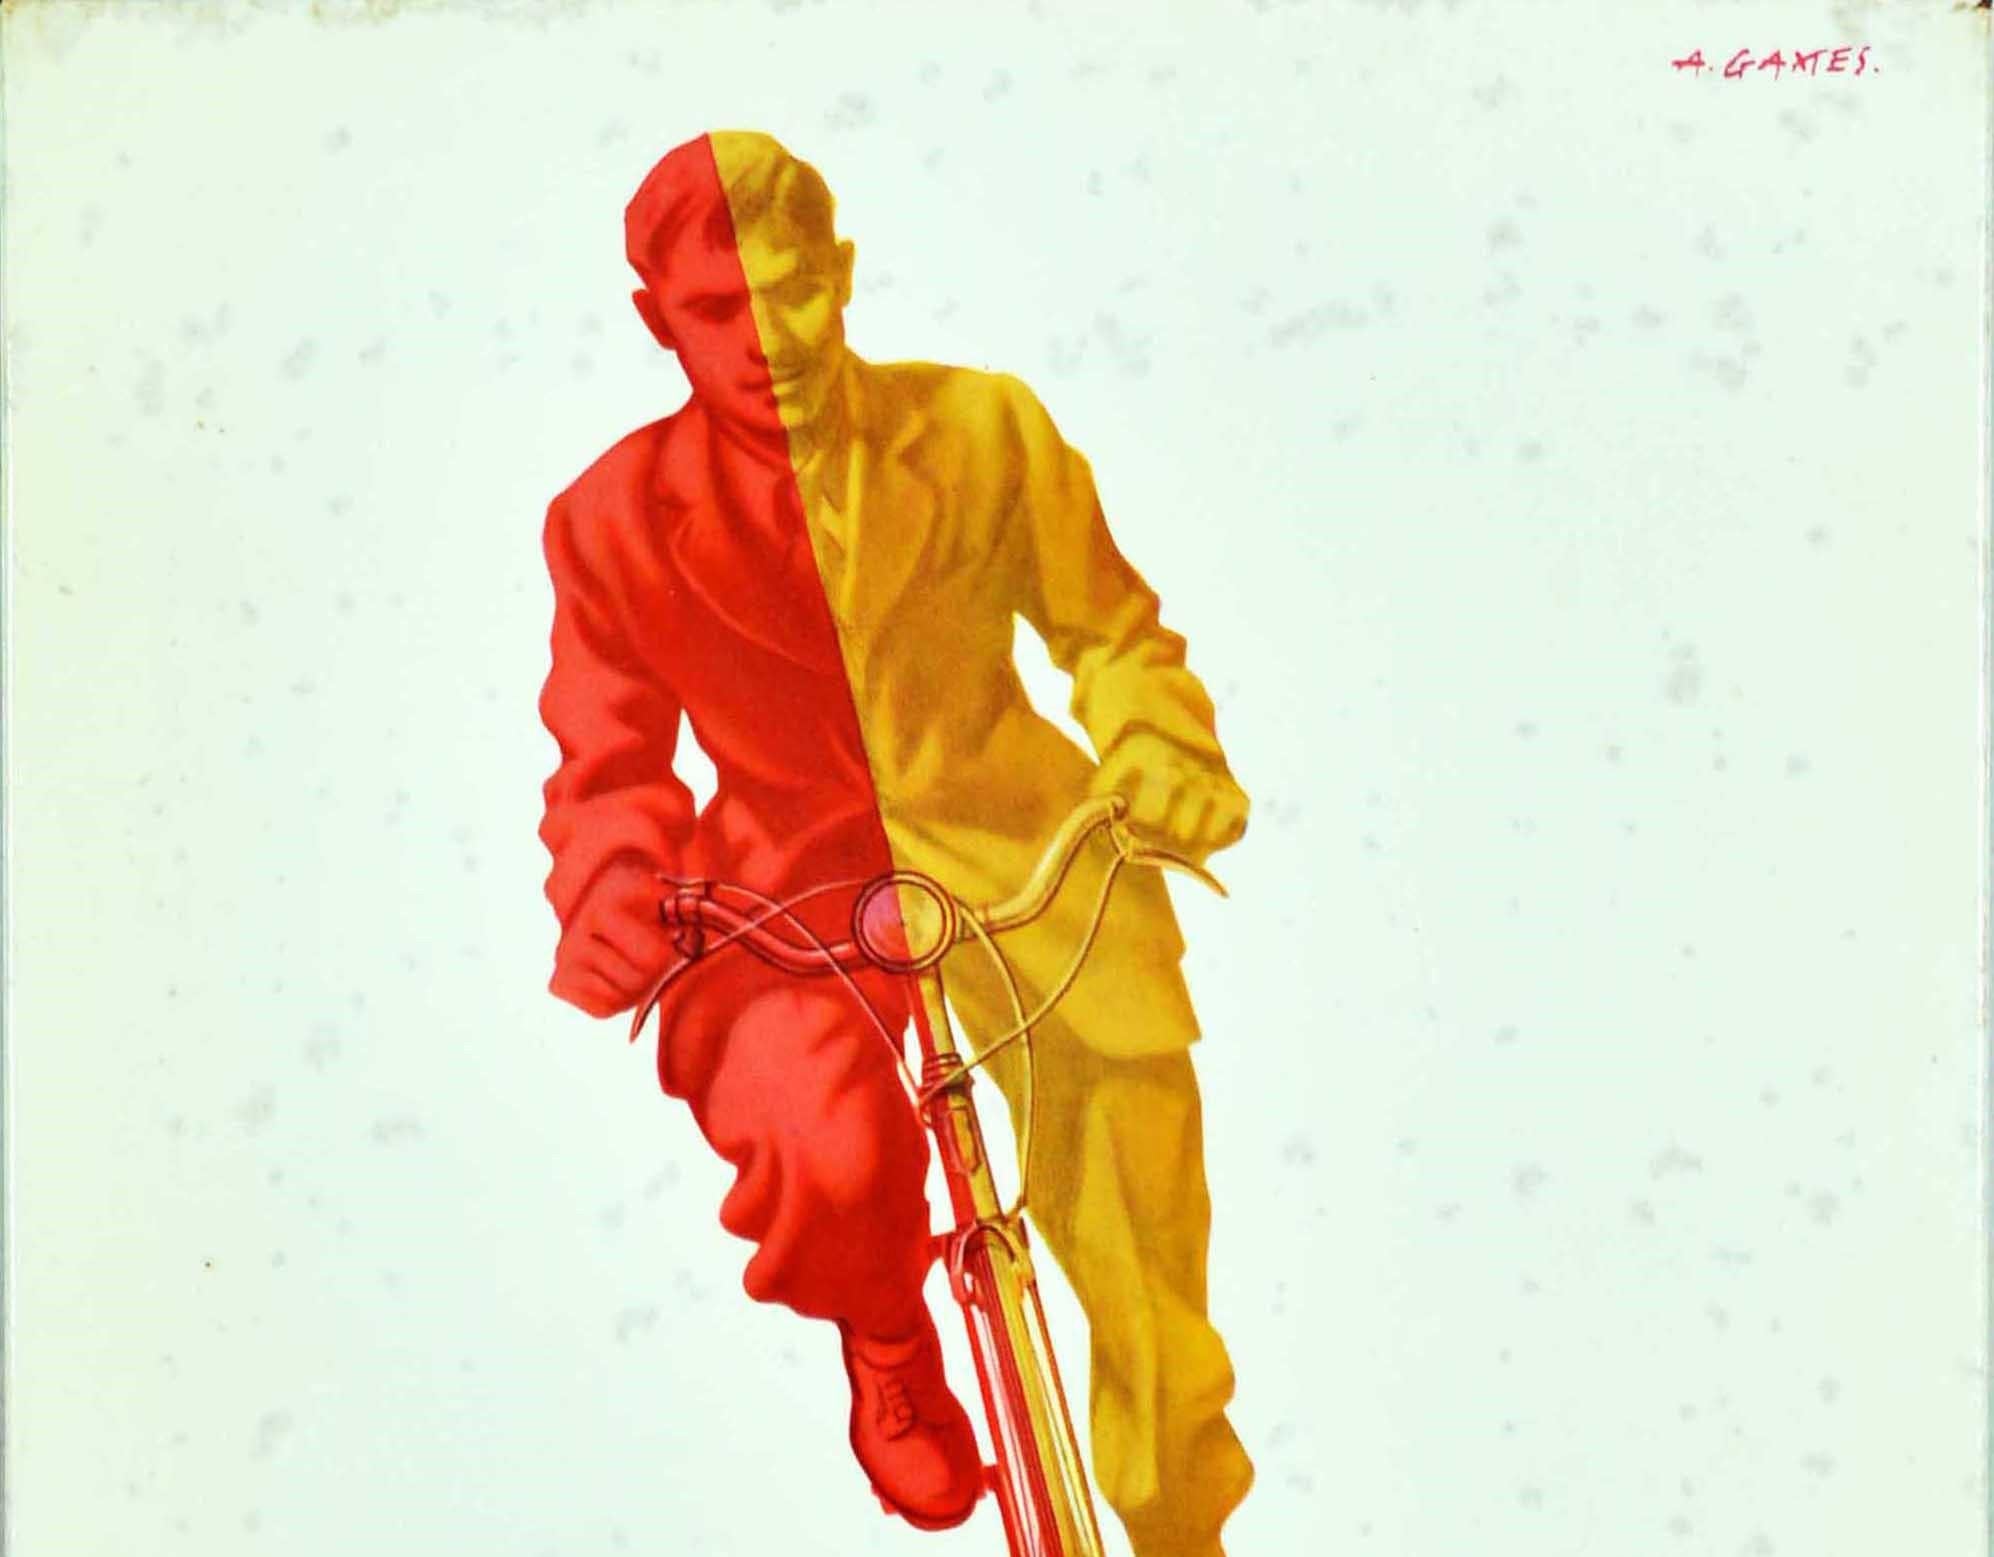 Original Vintage Desktop-Werbeplakat für The Coventry Cycle Chain mit einem großartigen Design des bekannten britischen Grafikdesigners Abram Games (Abraham Gamse; 1914-1996), das einen Radfahrer mit Anzug und Krawatte in Rot und Gelb zeigt, der auf